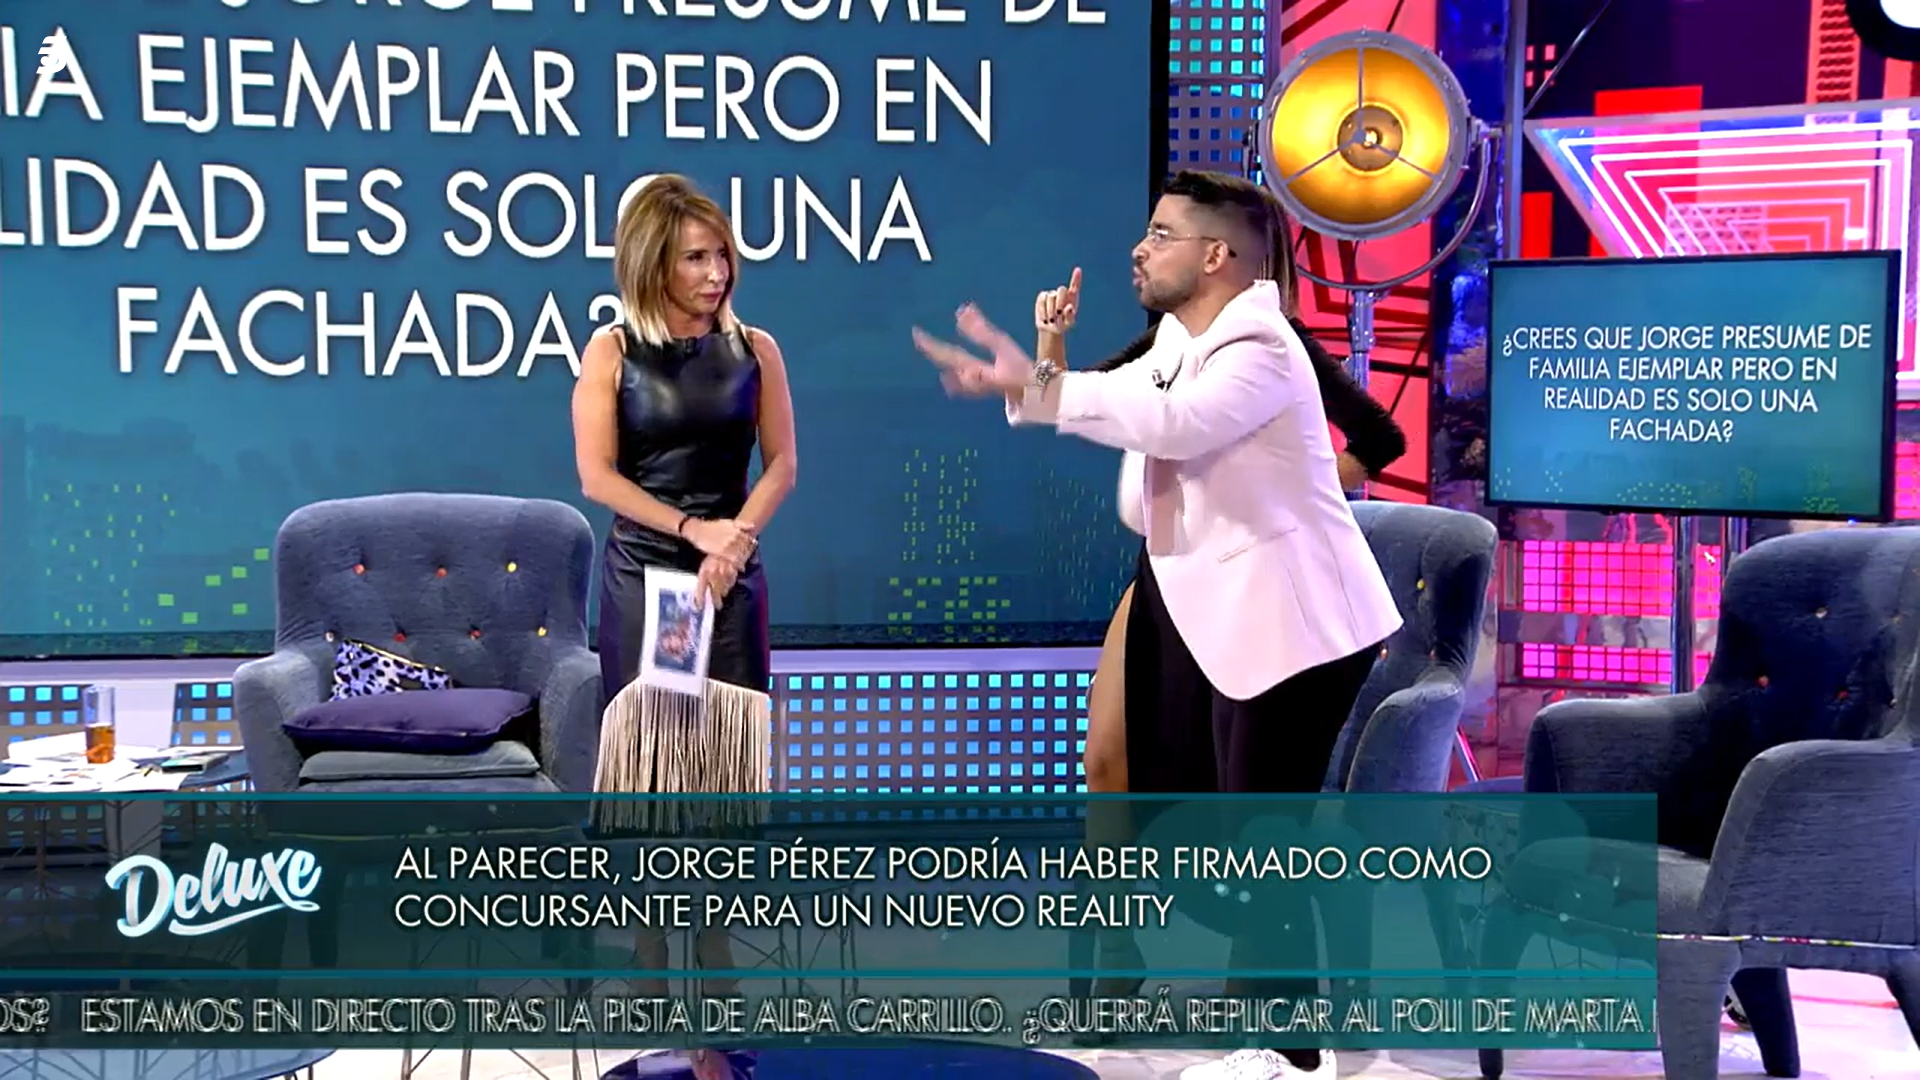 En el 'Deluxe' debatido sobre el posible pacto de Jorge Pérez y Alicia Peña en la televisión.